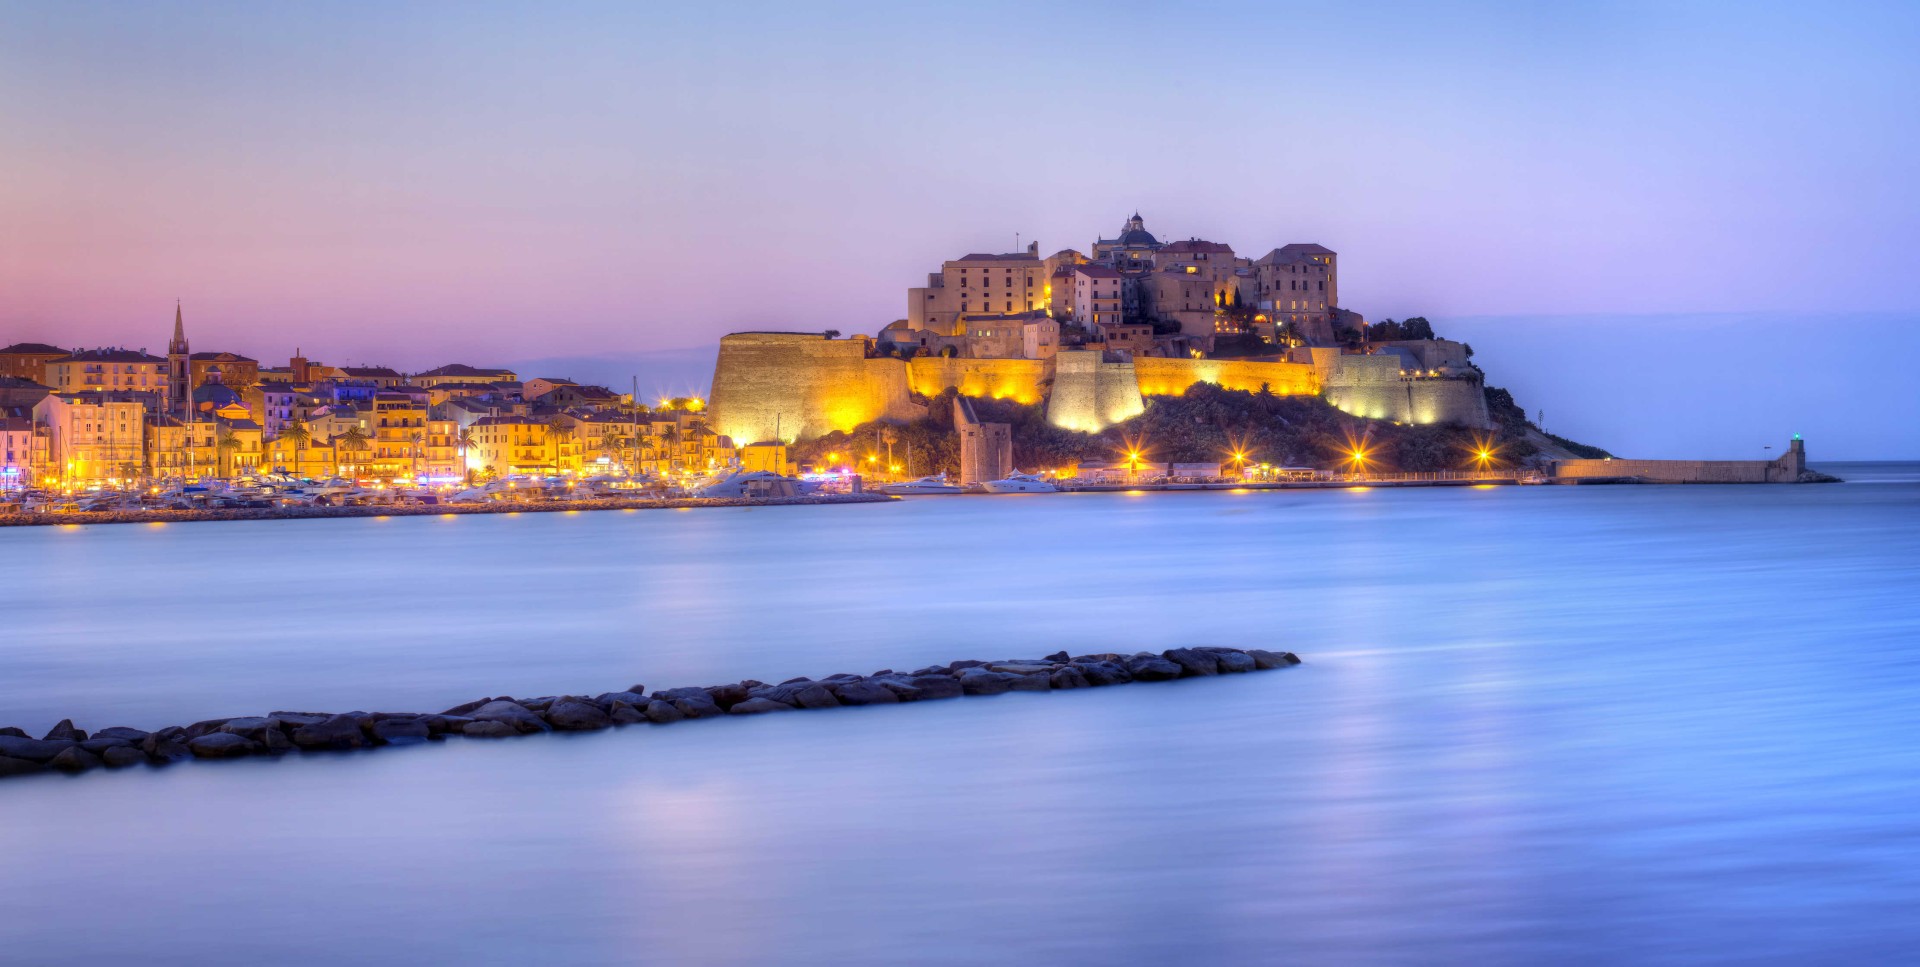 Citadelle de Calvi illuminée, Corse